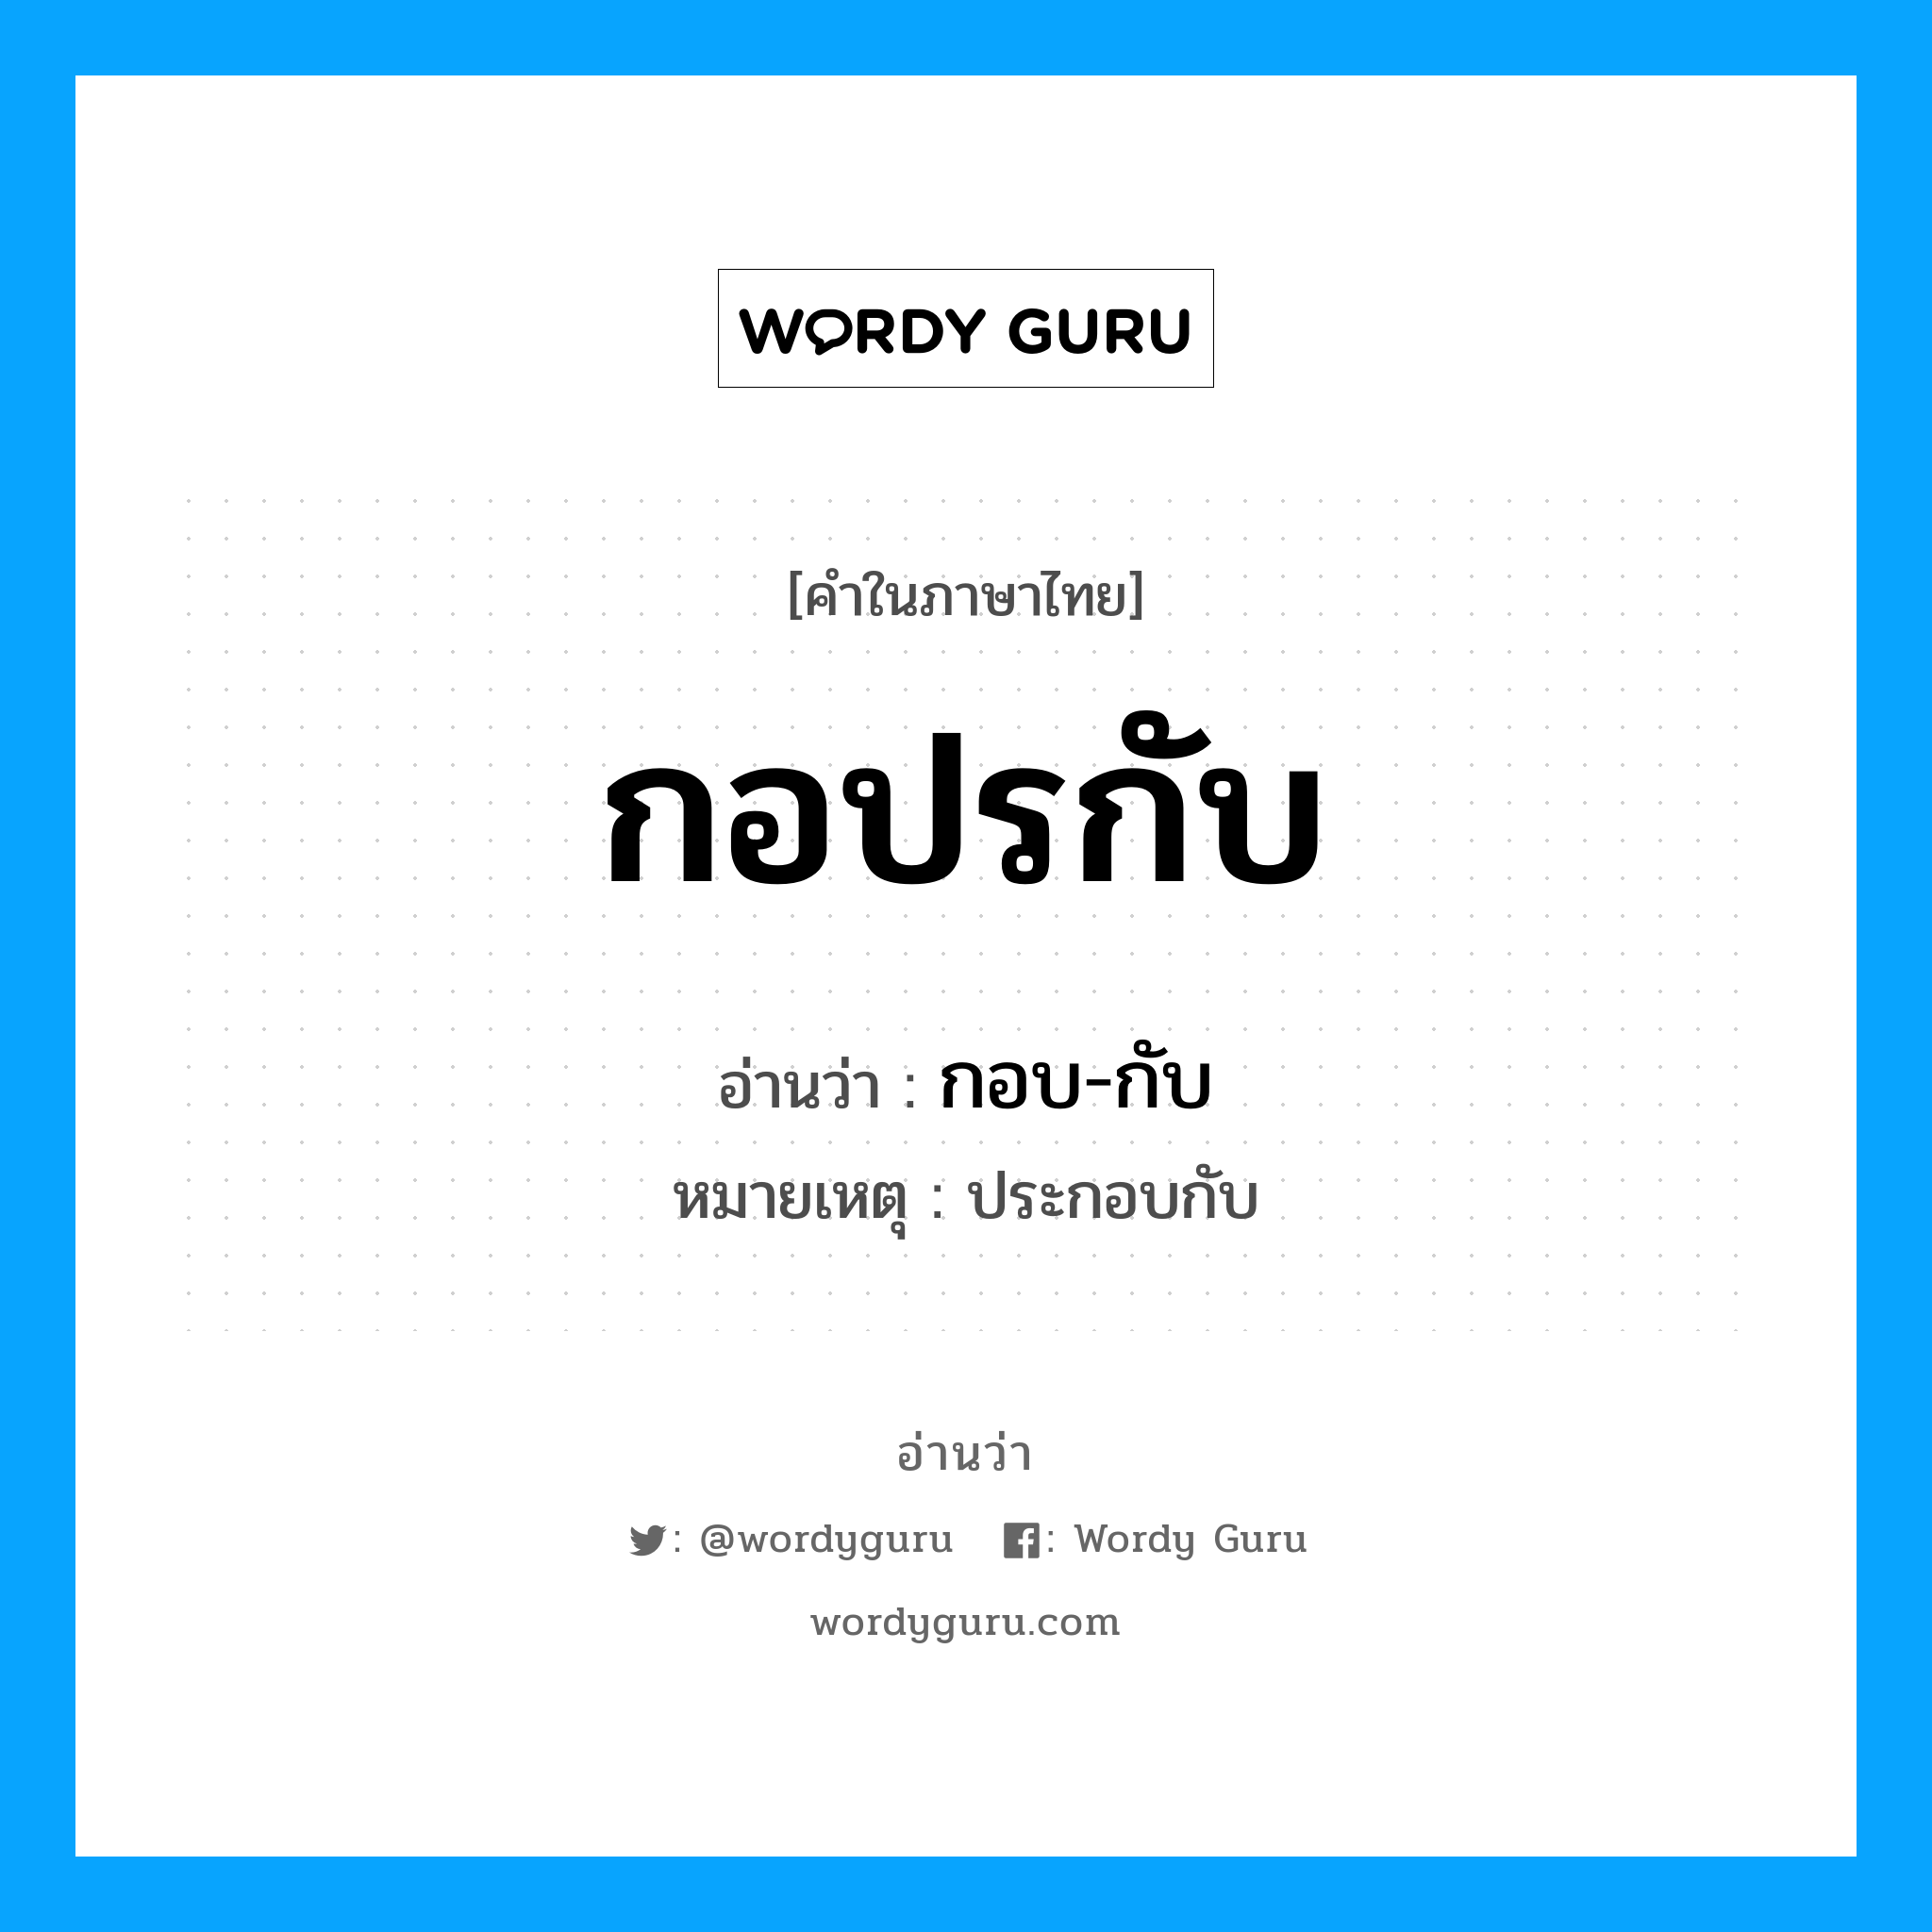 กอบ-กับ เป็นคำอ่านของคำไหน?, คำในภาษาไทย กอบ-กับ อ่านว่า กอปรกับ หมายเหตุ ประกอบกับ